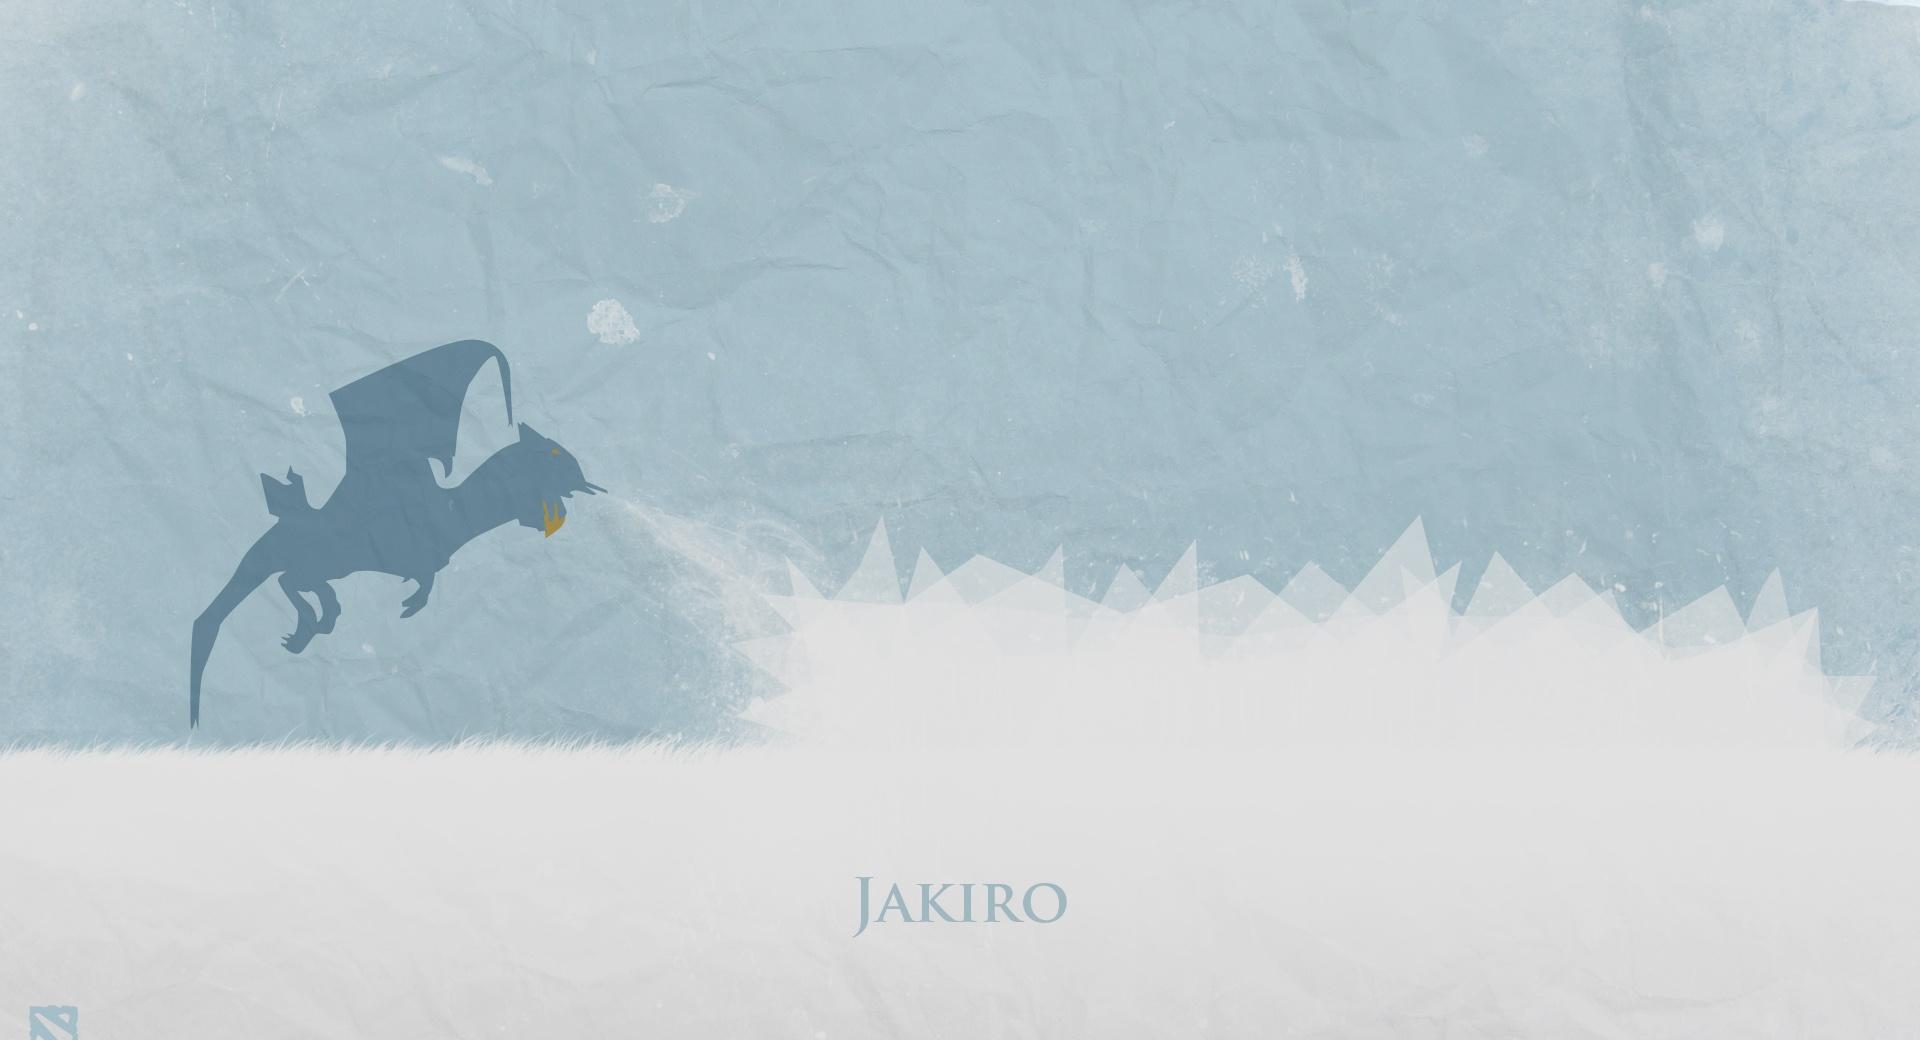 Jakiro - DotA 2 at 1600 x 1200 size wallpapers HD quality